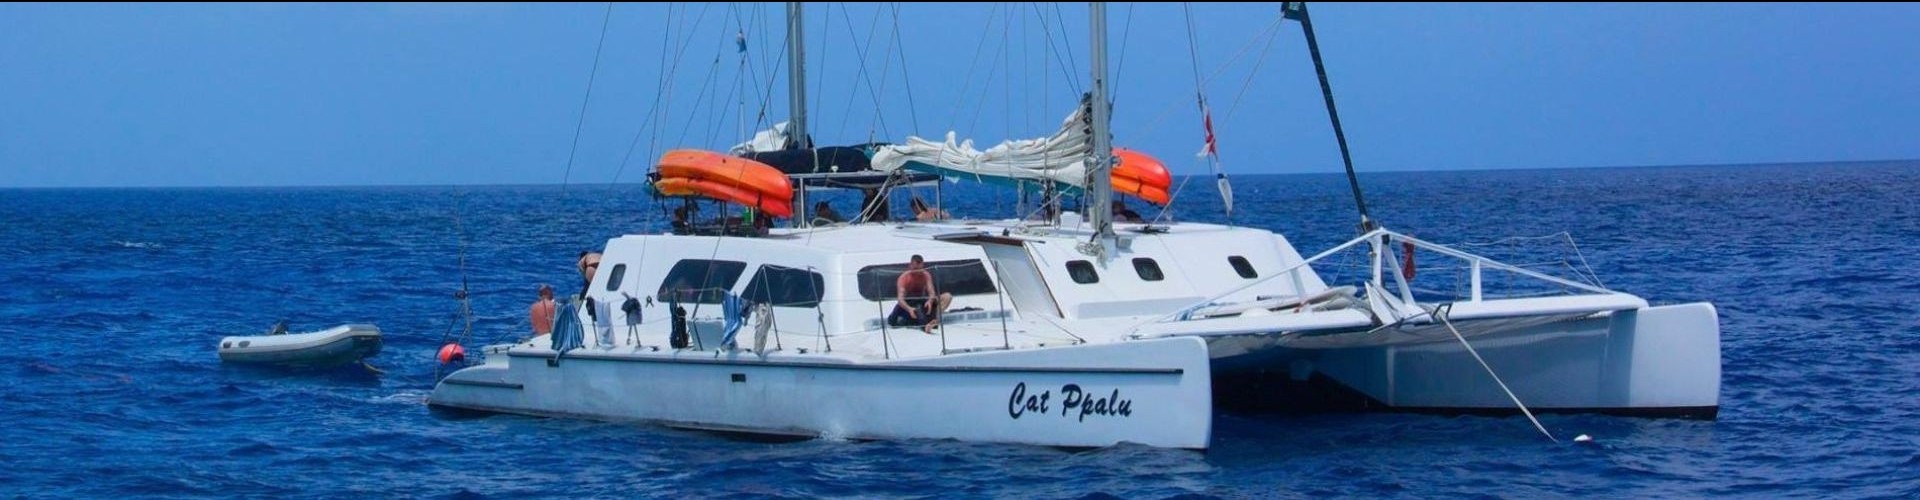 1 - Cat Ppalu - Bahamas